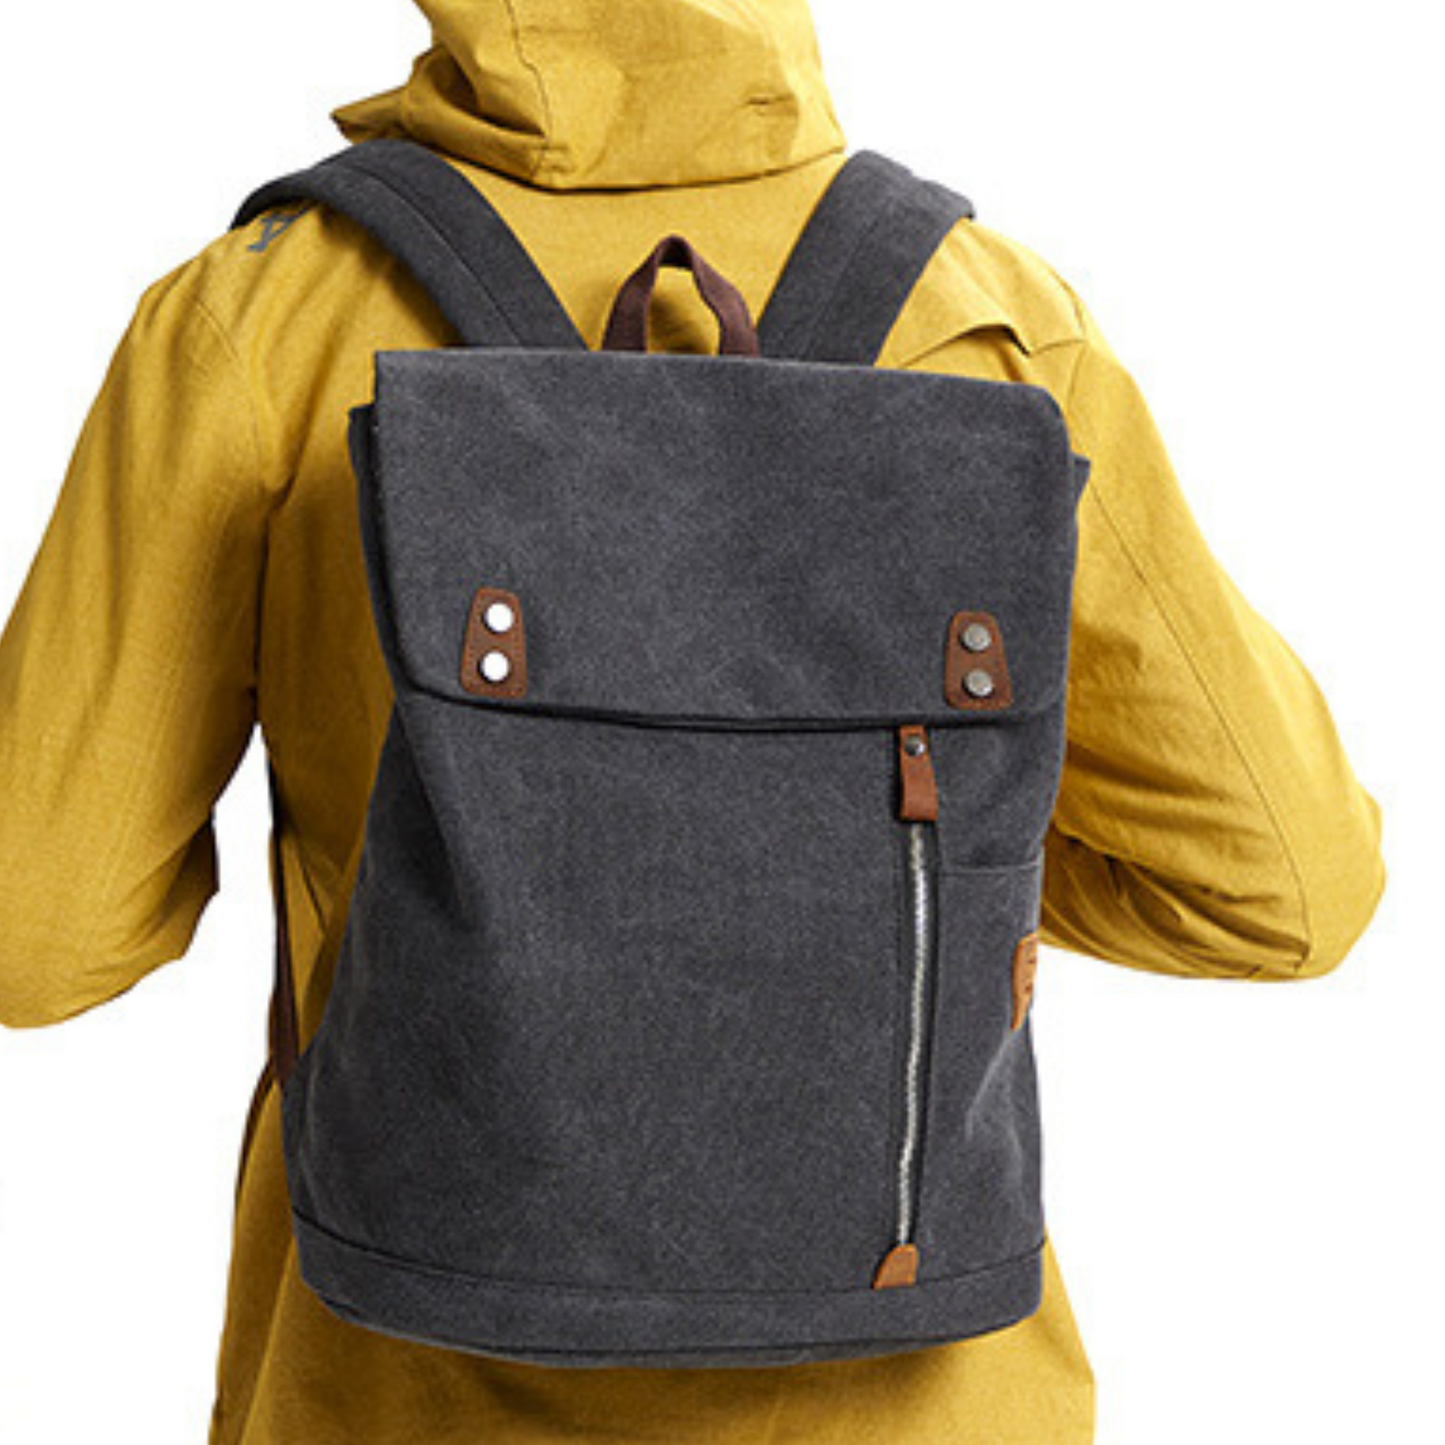 Gym School Travel Sport Large Premium Canvas Backpack Shoulder Bag